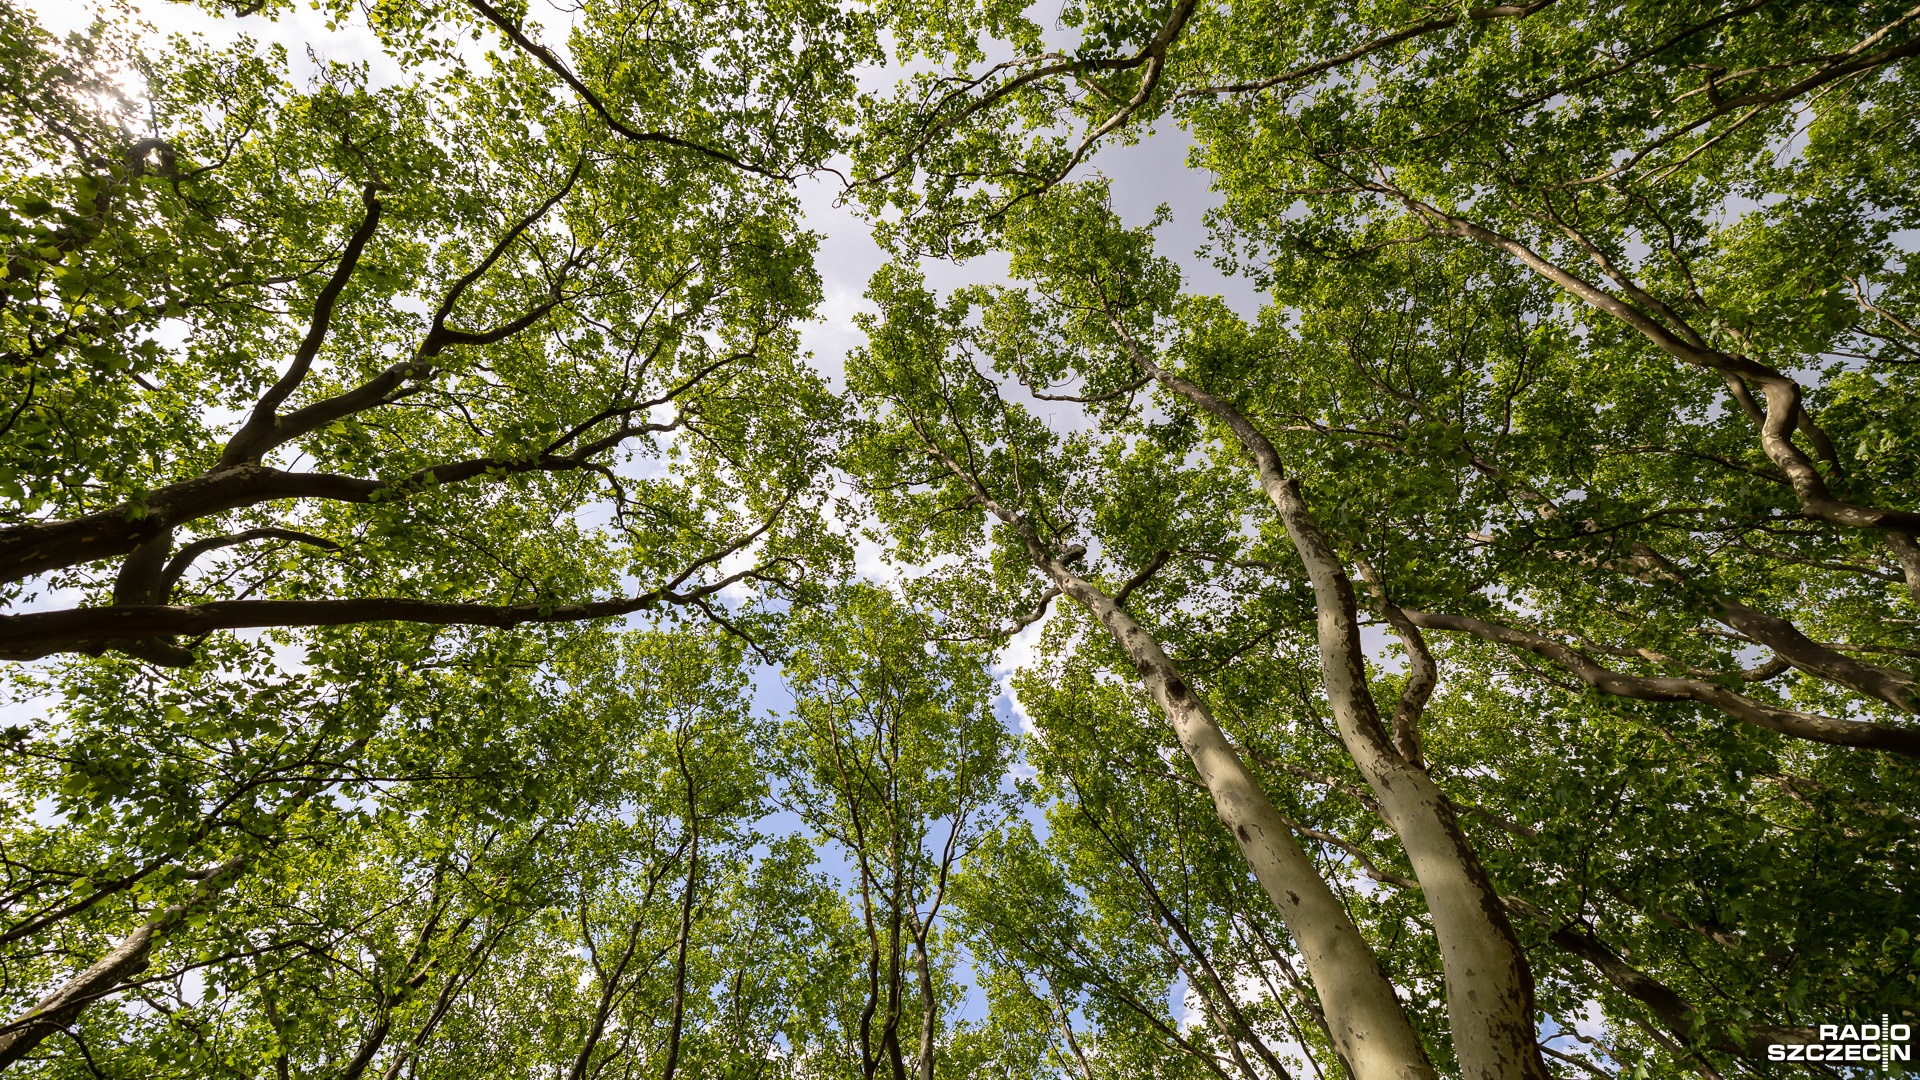 Przejęcie kontroli nad lasami to próba federalizacji Unii Europejskiej - tak Małgorzata Golińska, wiceminister Klimatu i Środowiska ocenia przegłosowane w tej sprawie przez jedną z komisji Parlamentu Europejskiego nowe prawo.